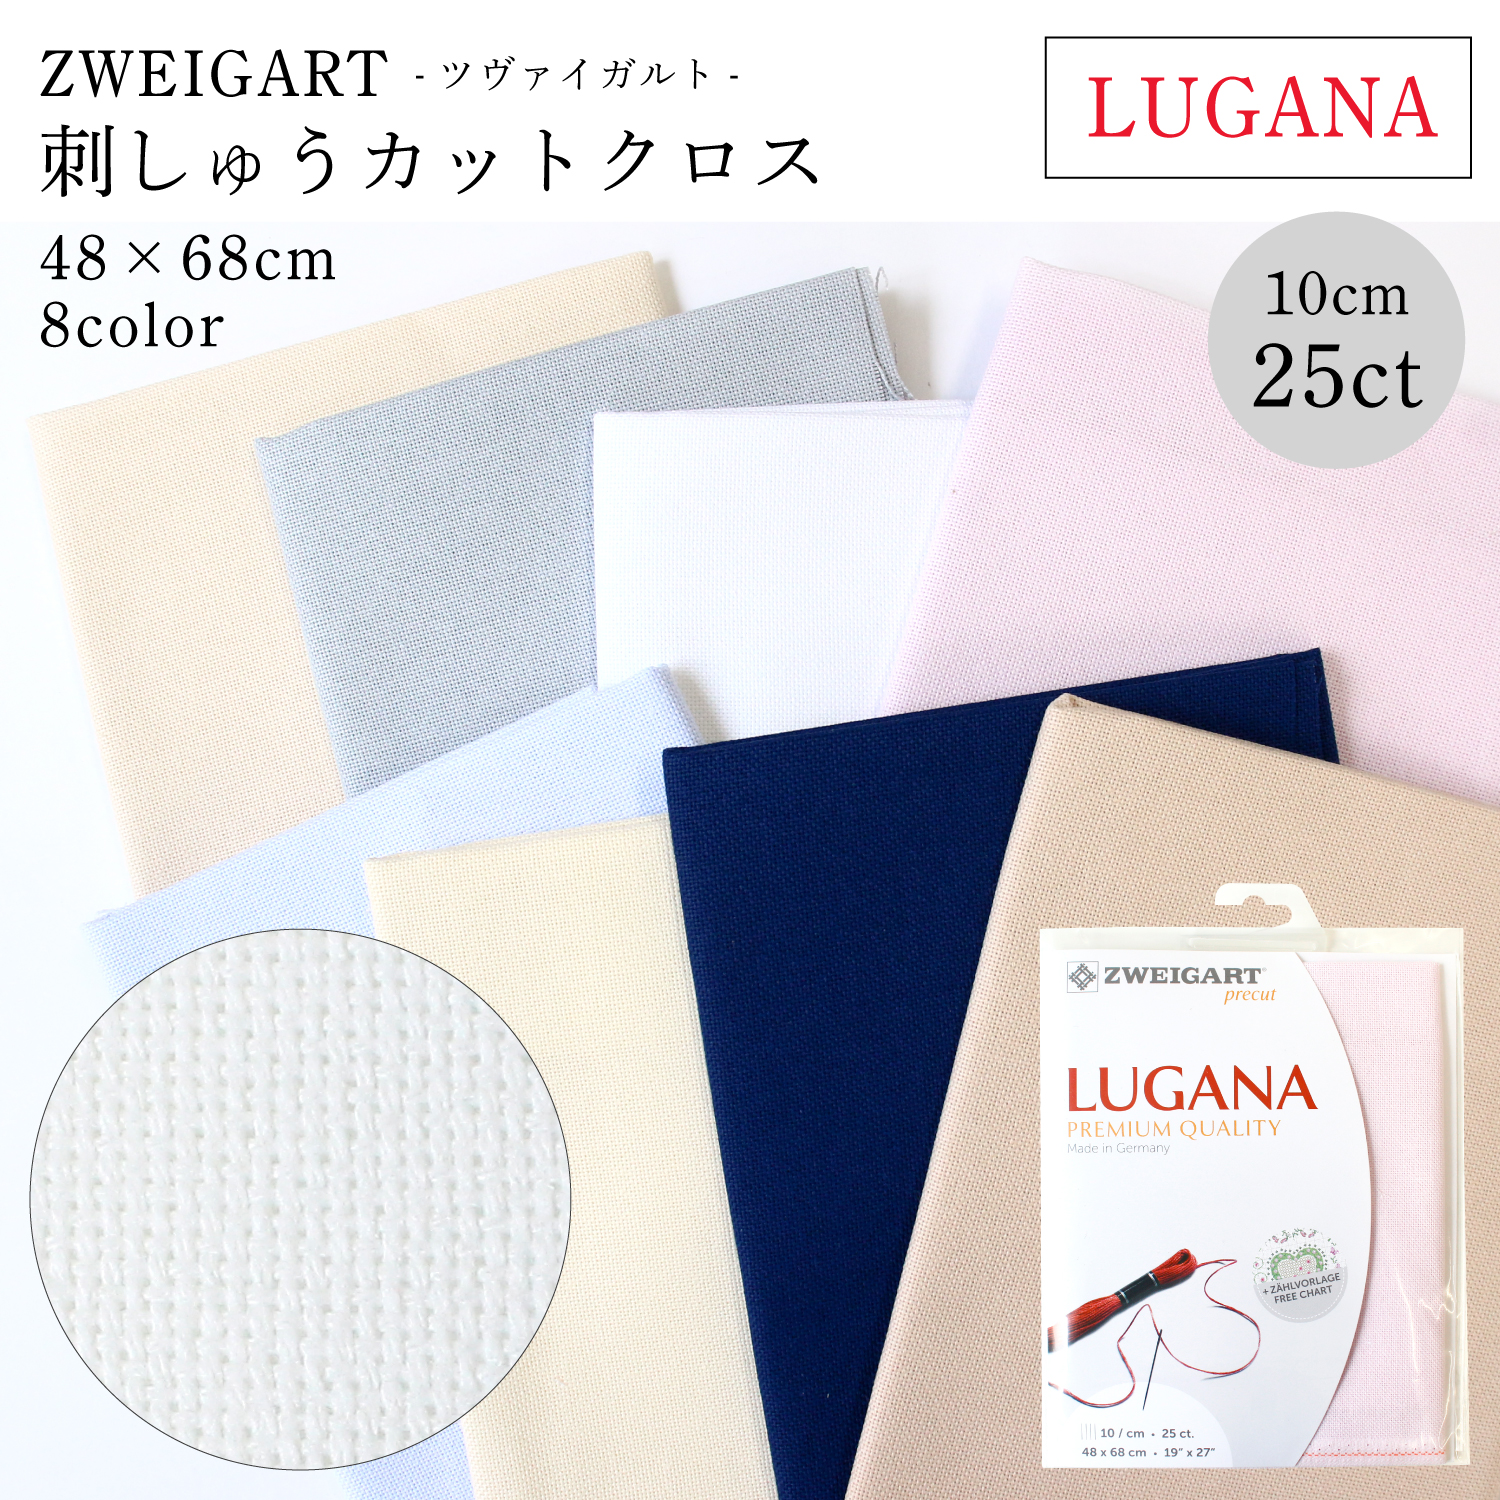 ZW3835P TWEIGART Embroidery Cloth 25CT LUGANA 48x68cm (bag)